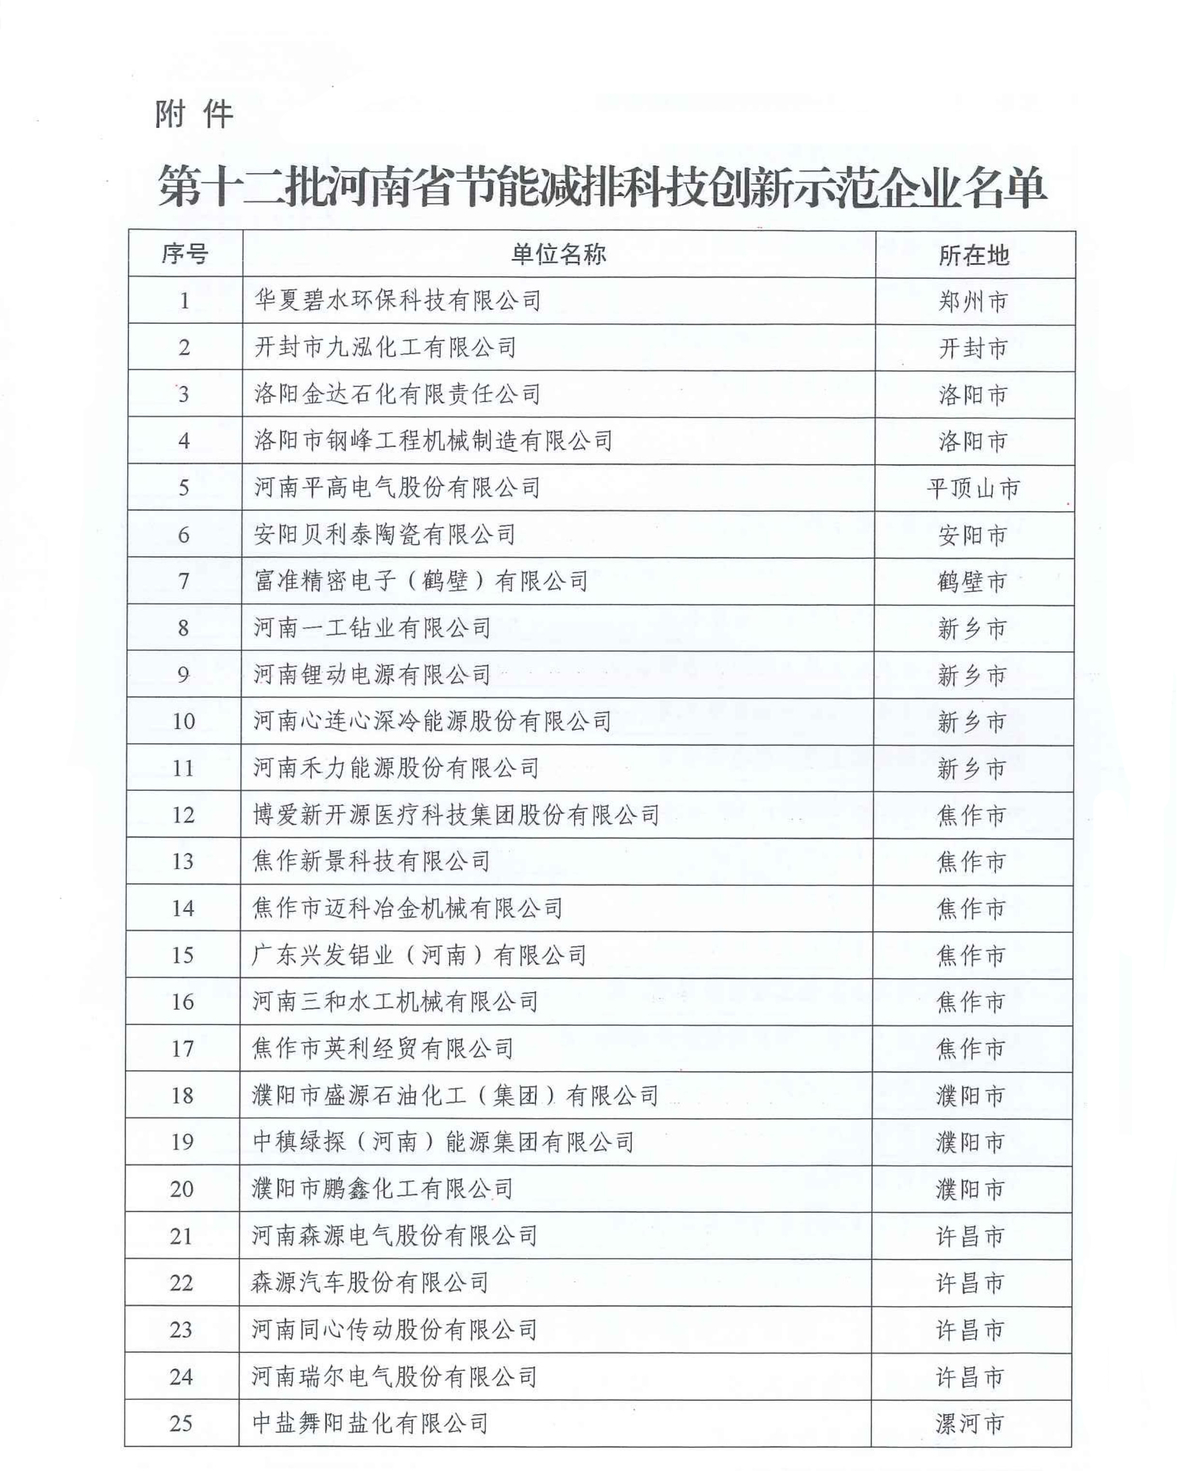 河南省公示第十二批节能减排科技创新示范企业名单